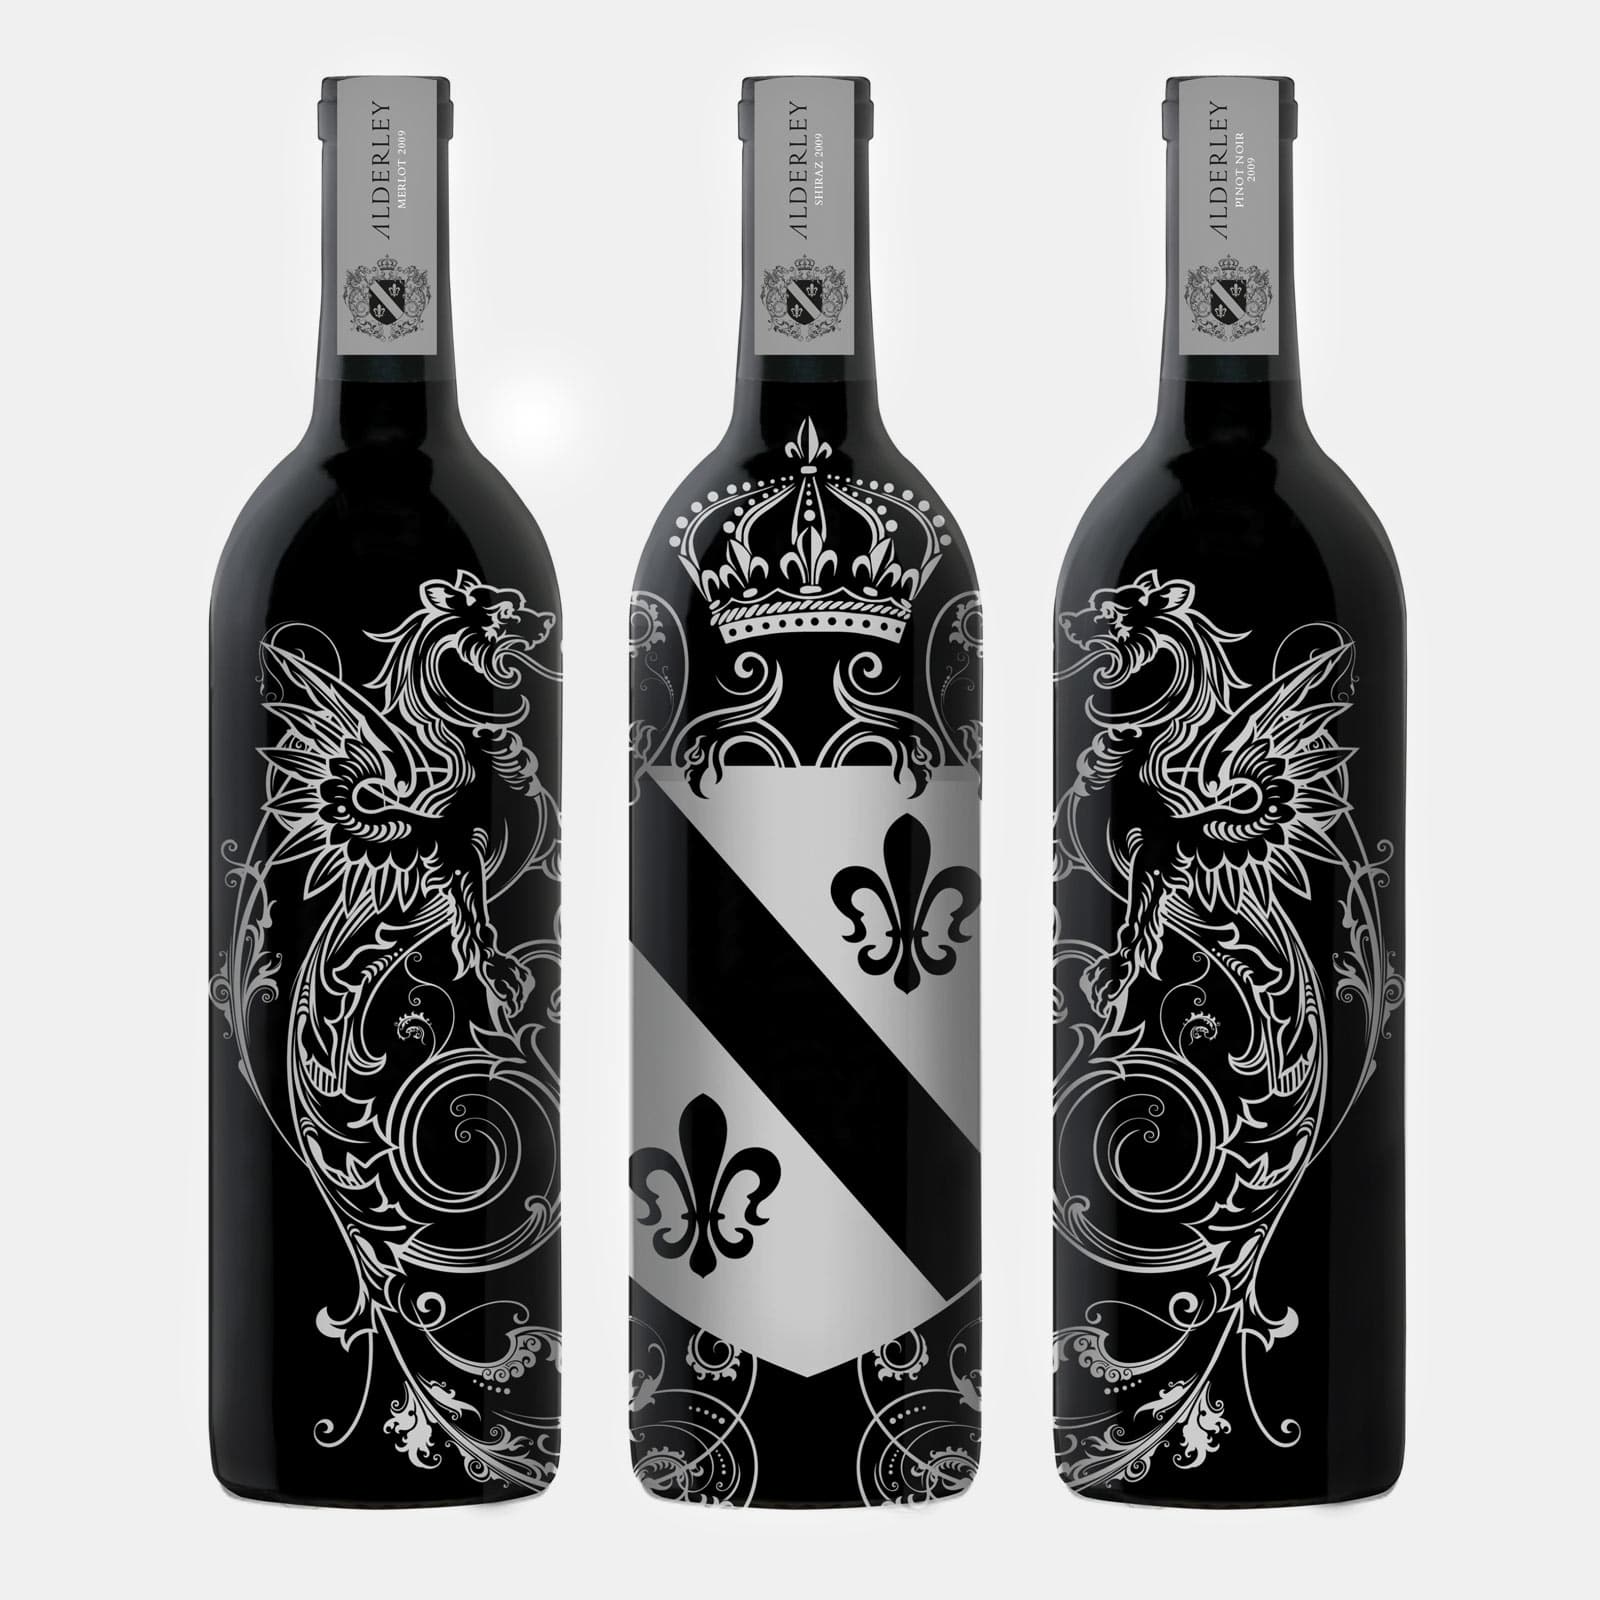 Alderley Branded Wine Bottles